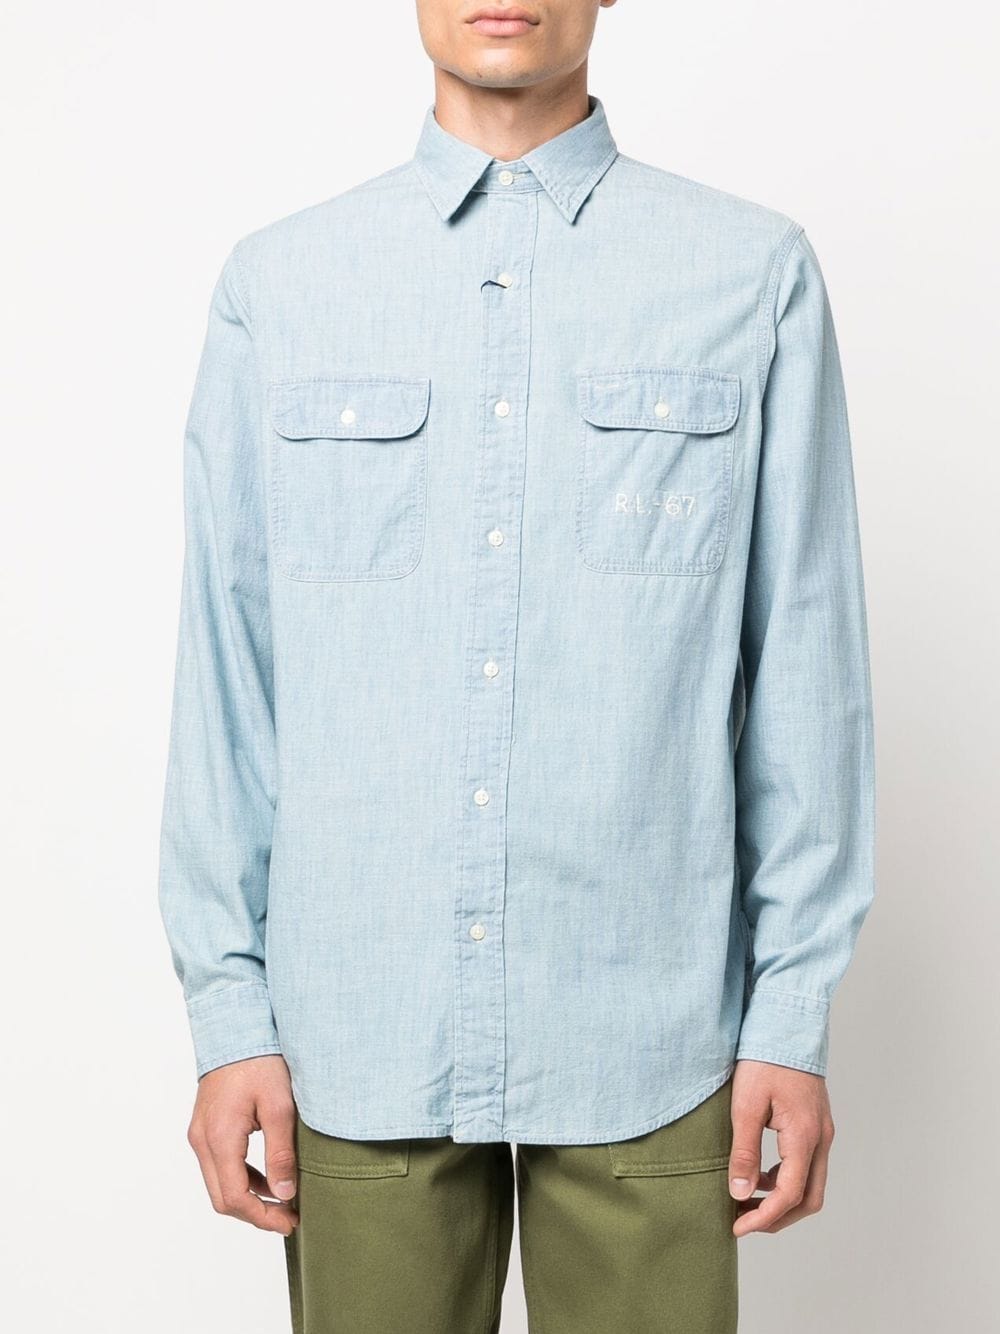 Polo Ralph Lauren Light Denim long-sleeve Shirt - Farfetch